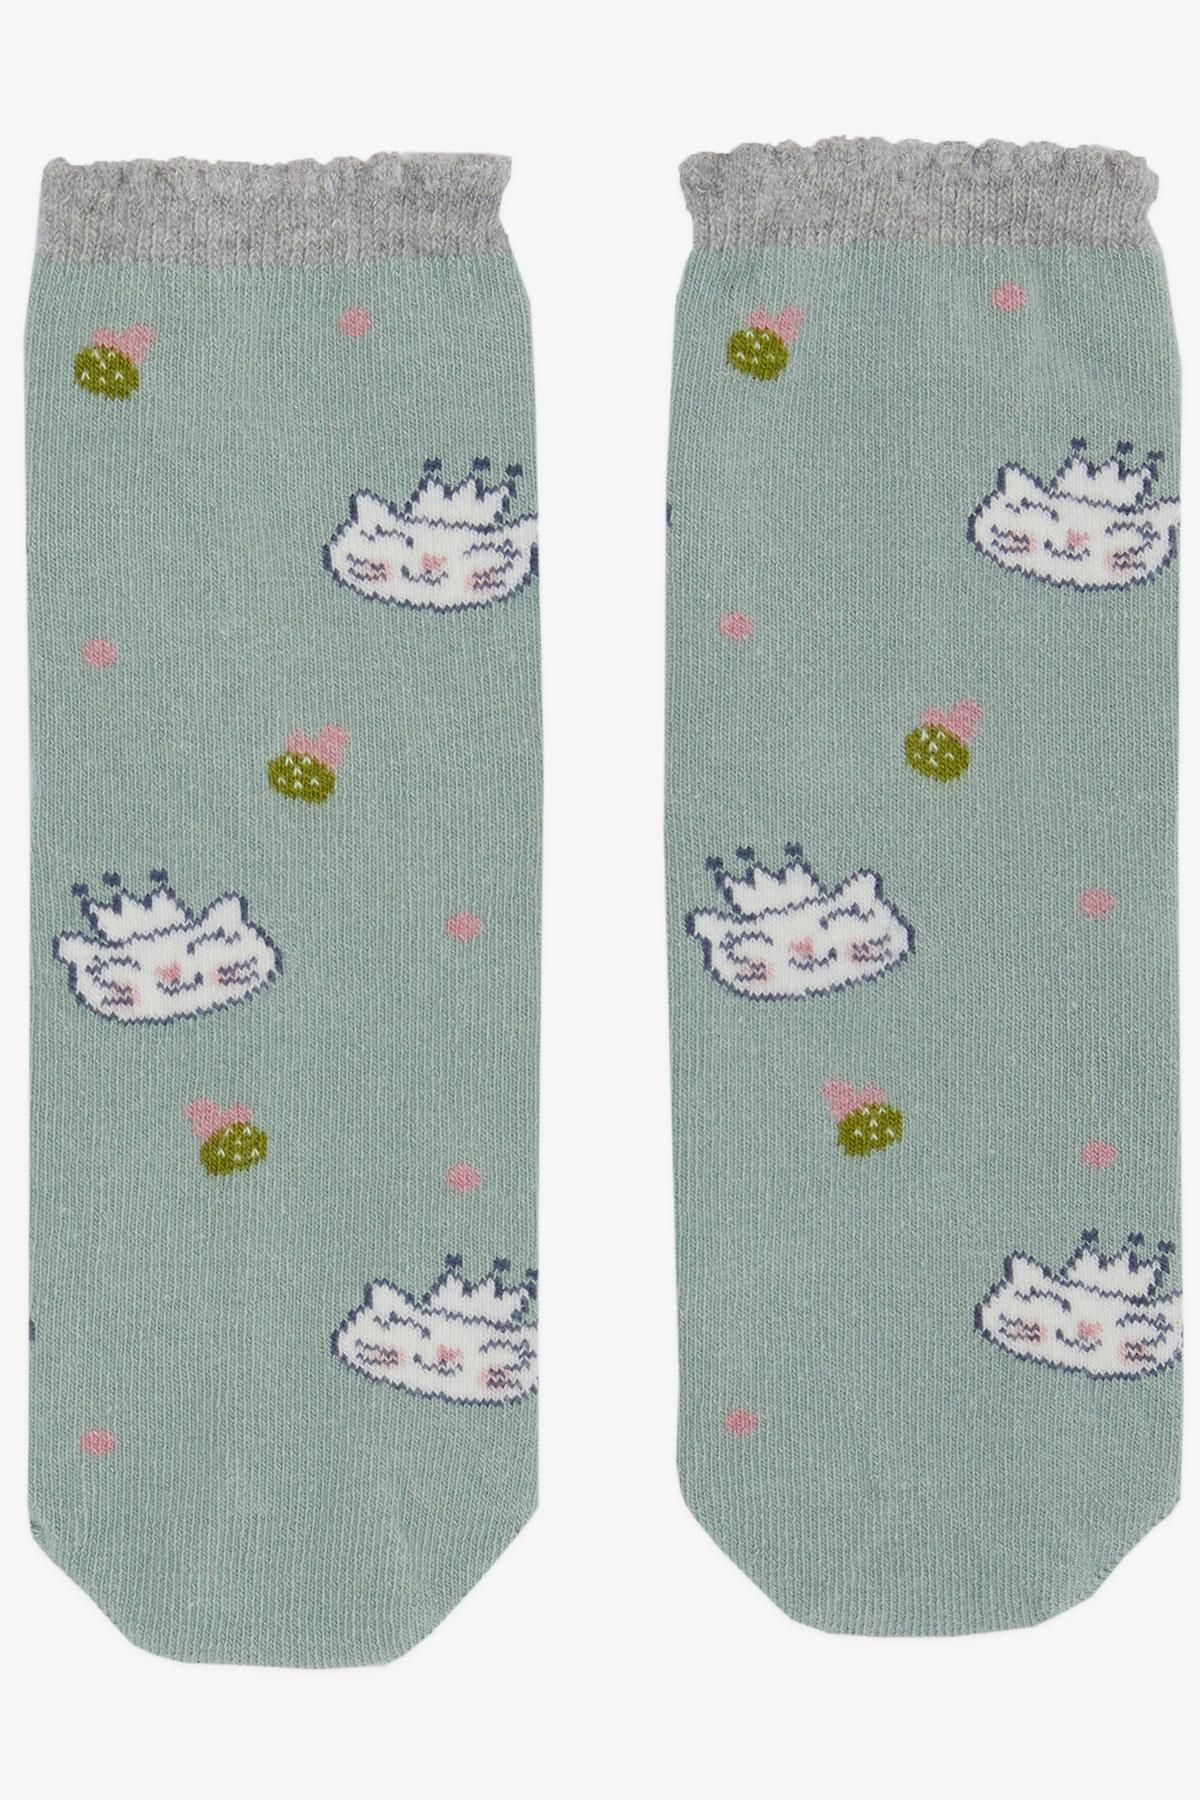 Katamino Artı Kız Çocuk Soket Çorap Sevimli Prenses Kedicik Baskılı 3-8 Yaş, Mint Yeşili